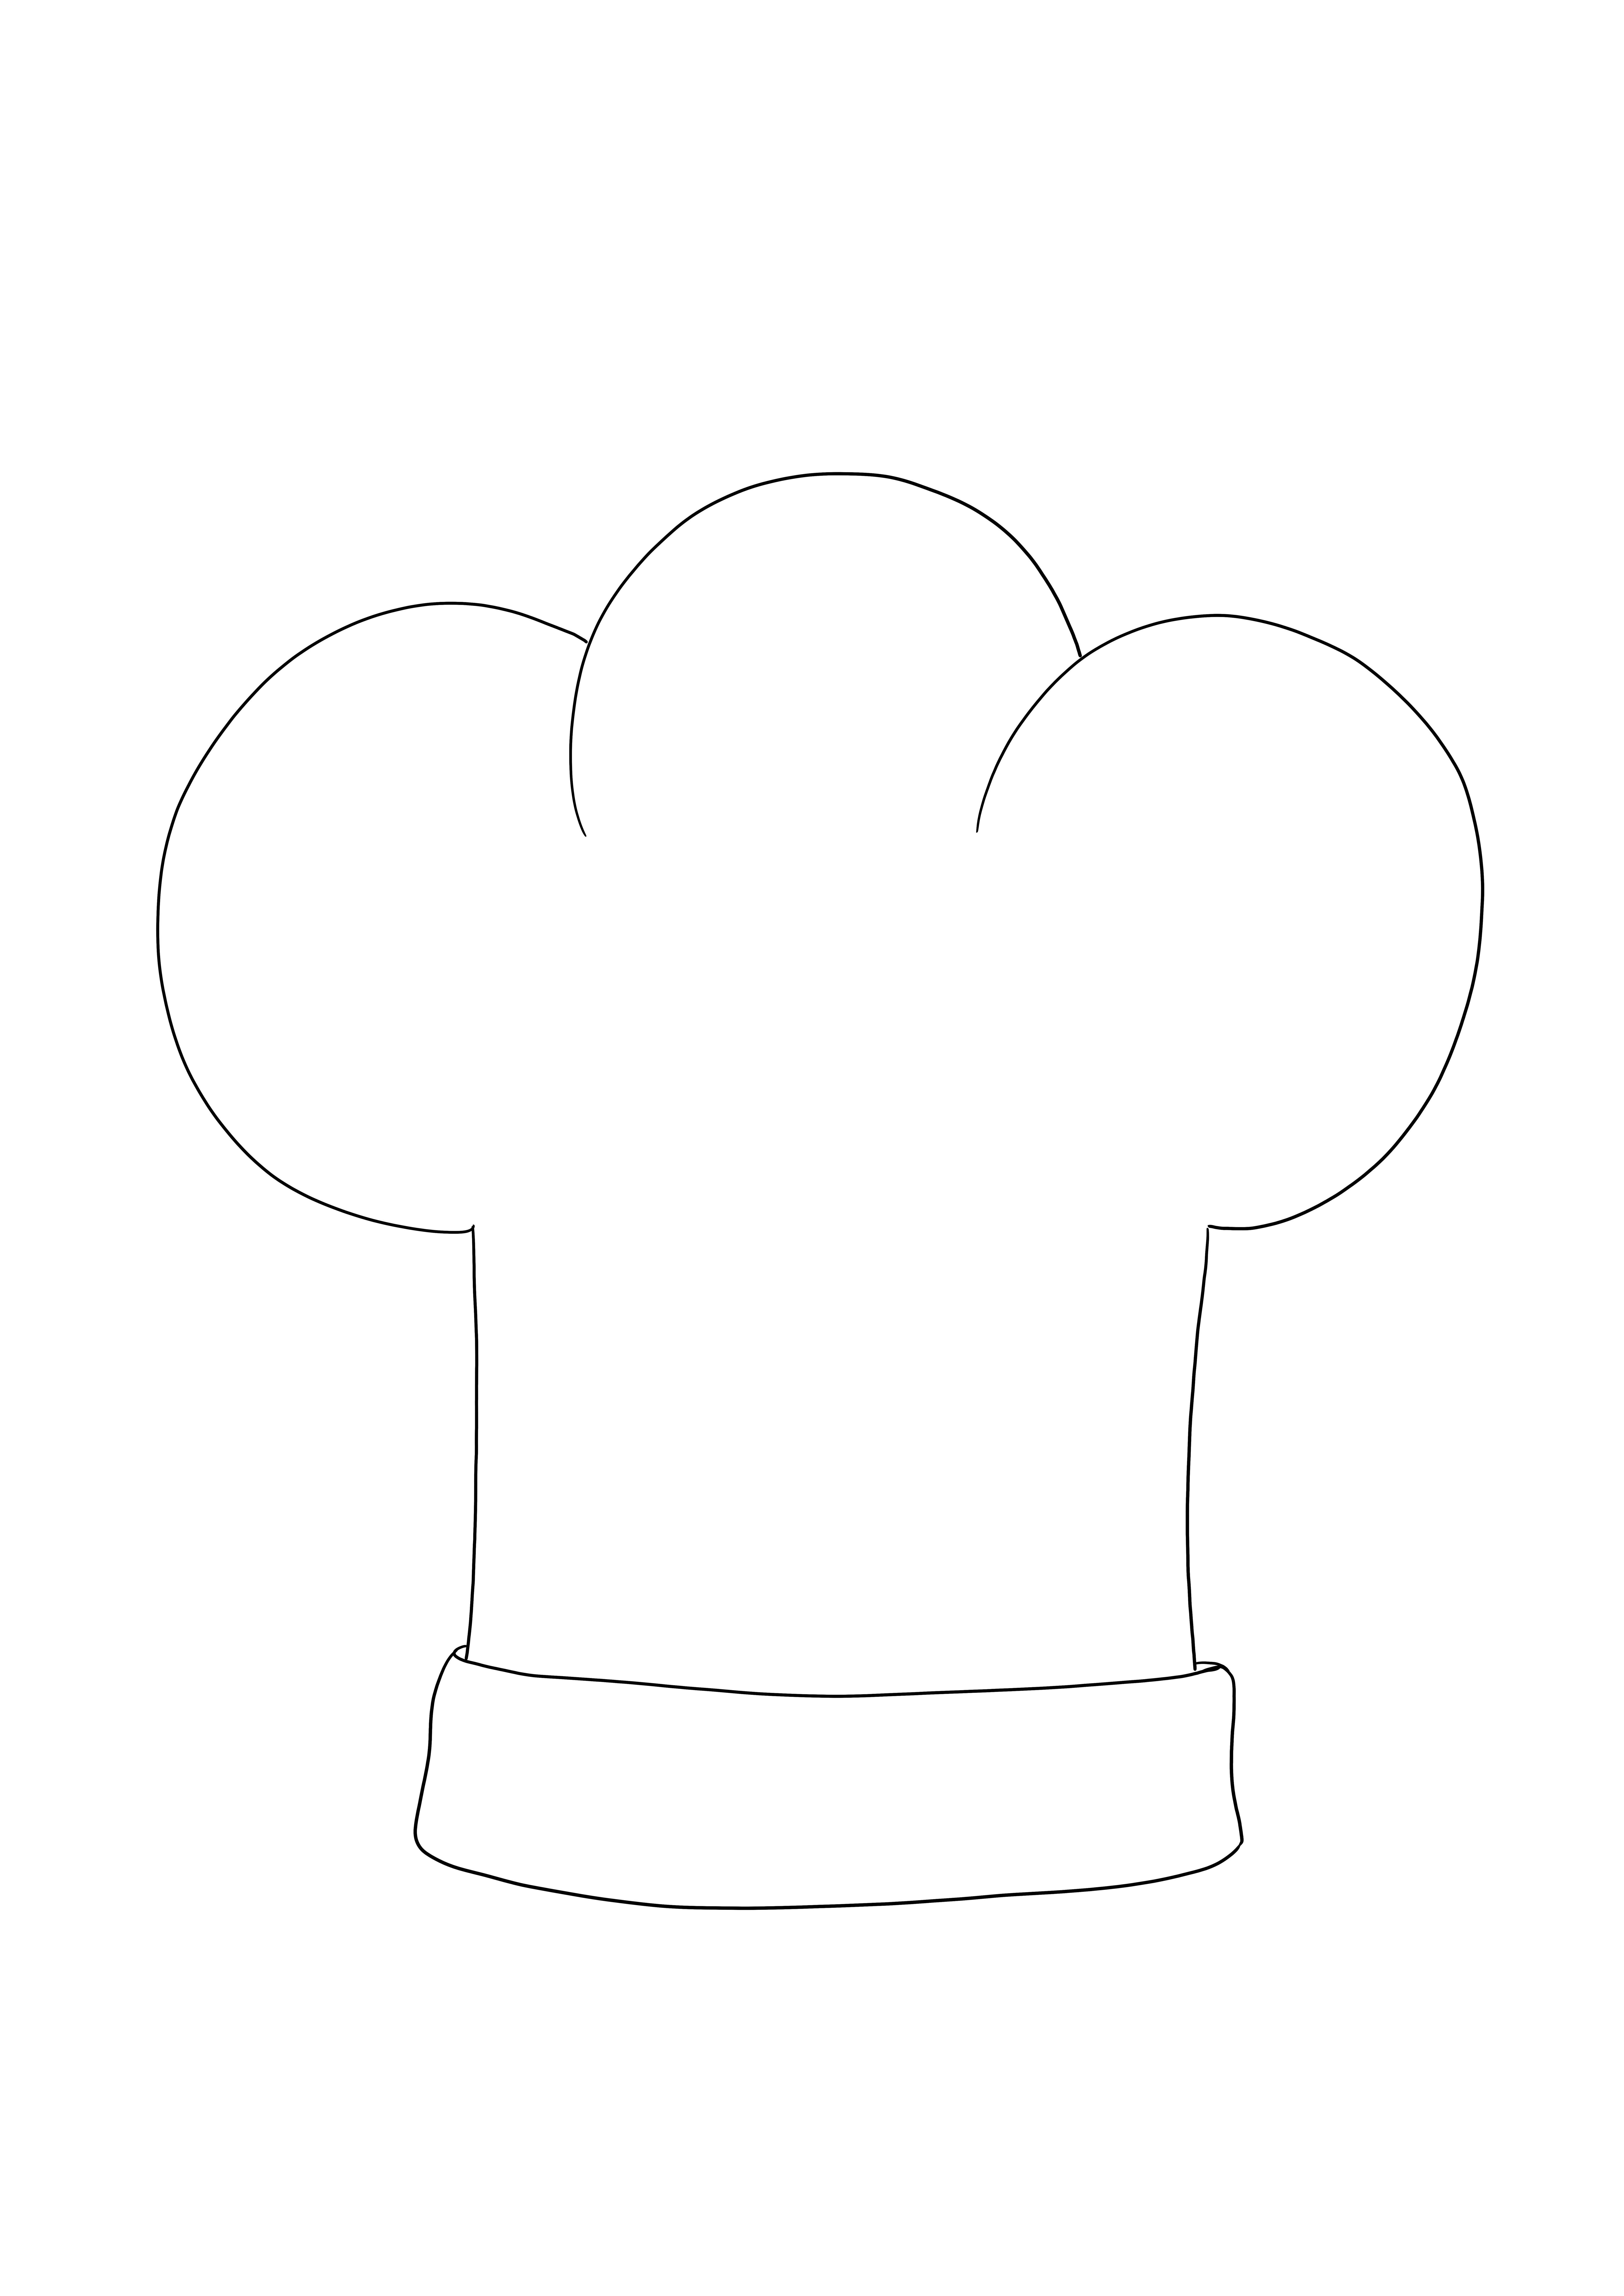 Gambar Chef's Hat yang dapat dicetak dan diwarnai gratis - cara yang bagus untuk belajar tentang profesi